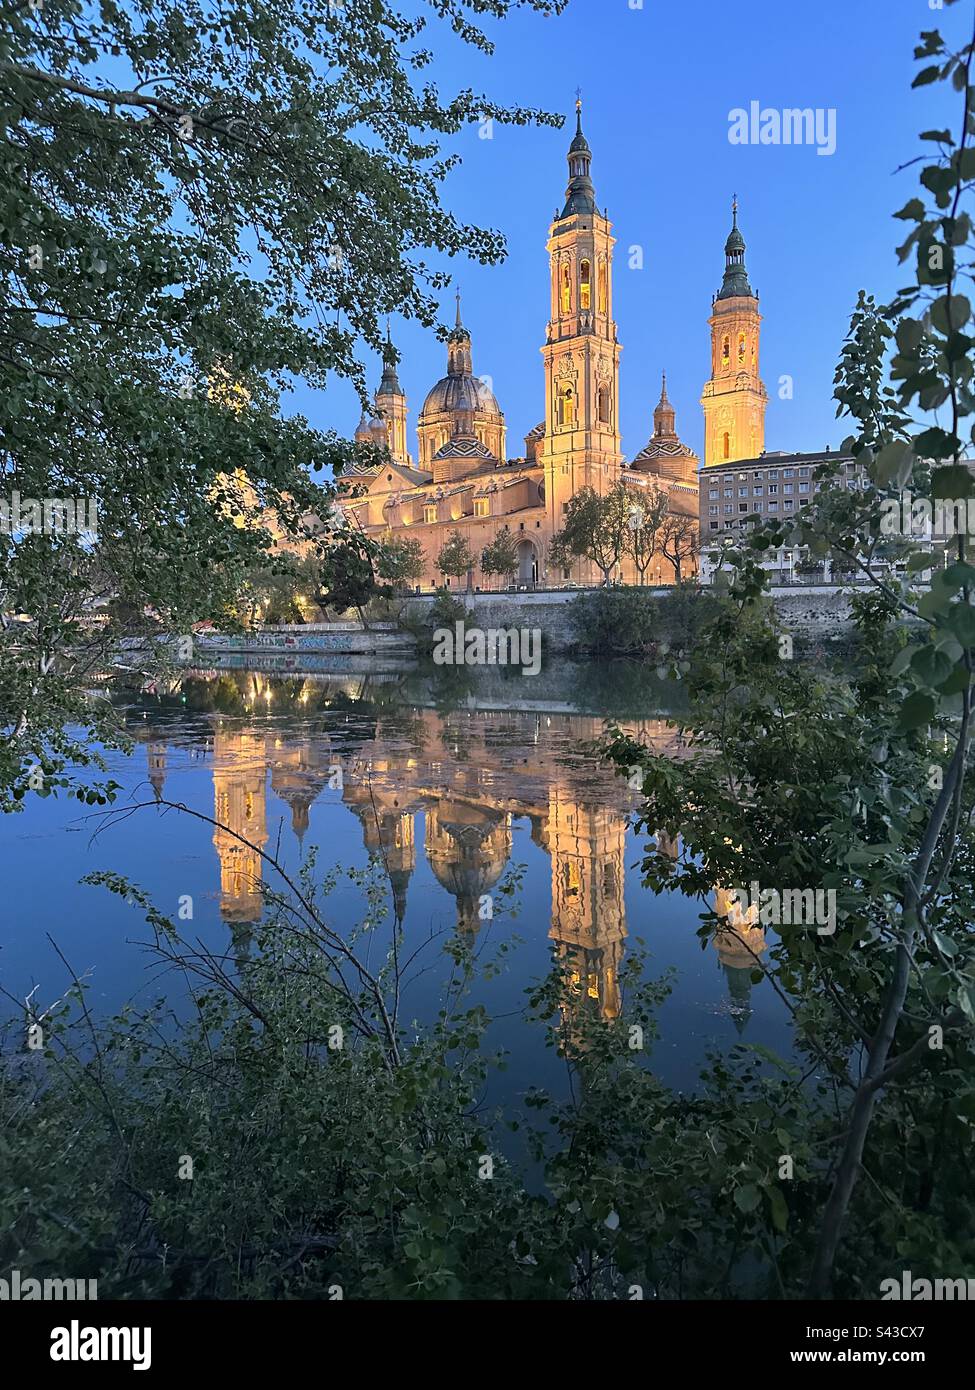 Cathedral-Basilica of Our Lady of the Pillar, Zaragoza, and its reflection on Ebro river. Basílica de Nuestra Señora del Pilar, Zaragoza, con reflejo en el rio Ebro Stock Photo